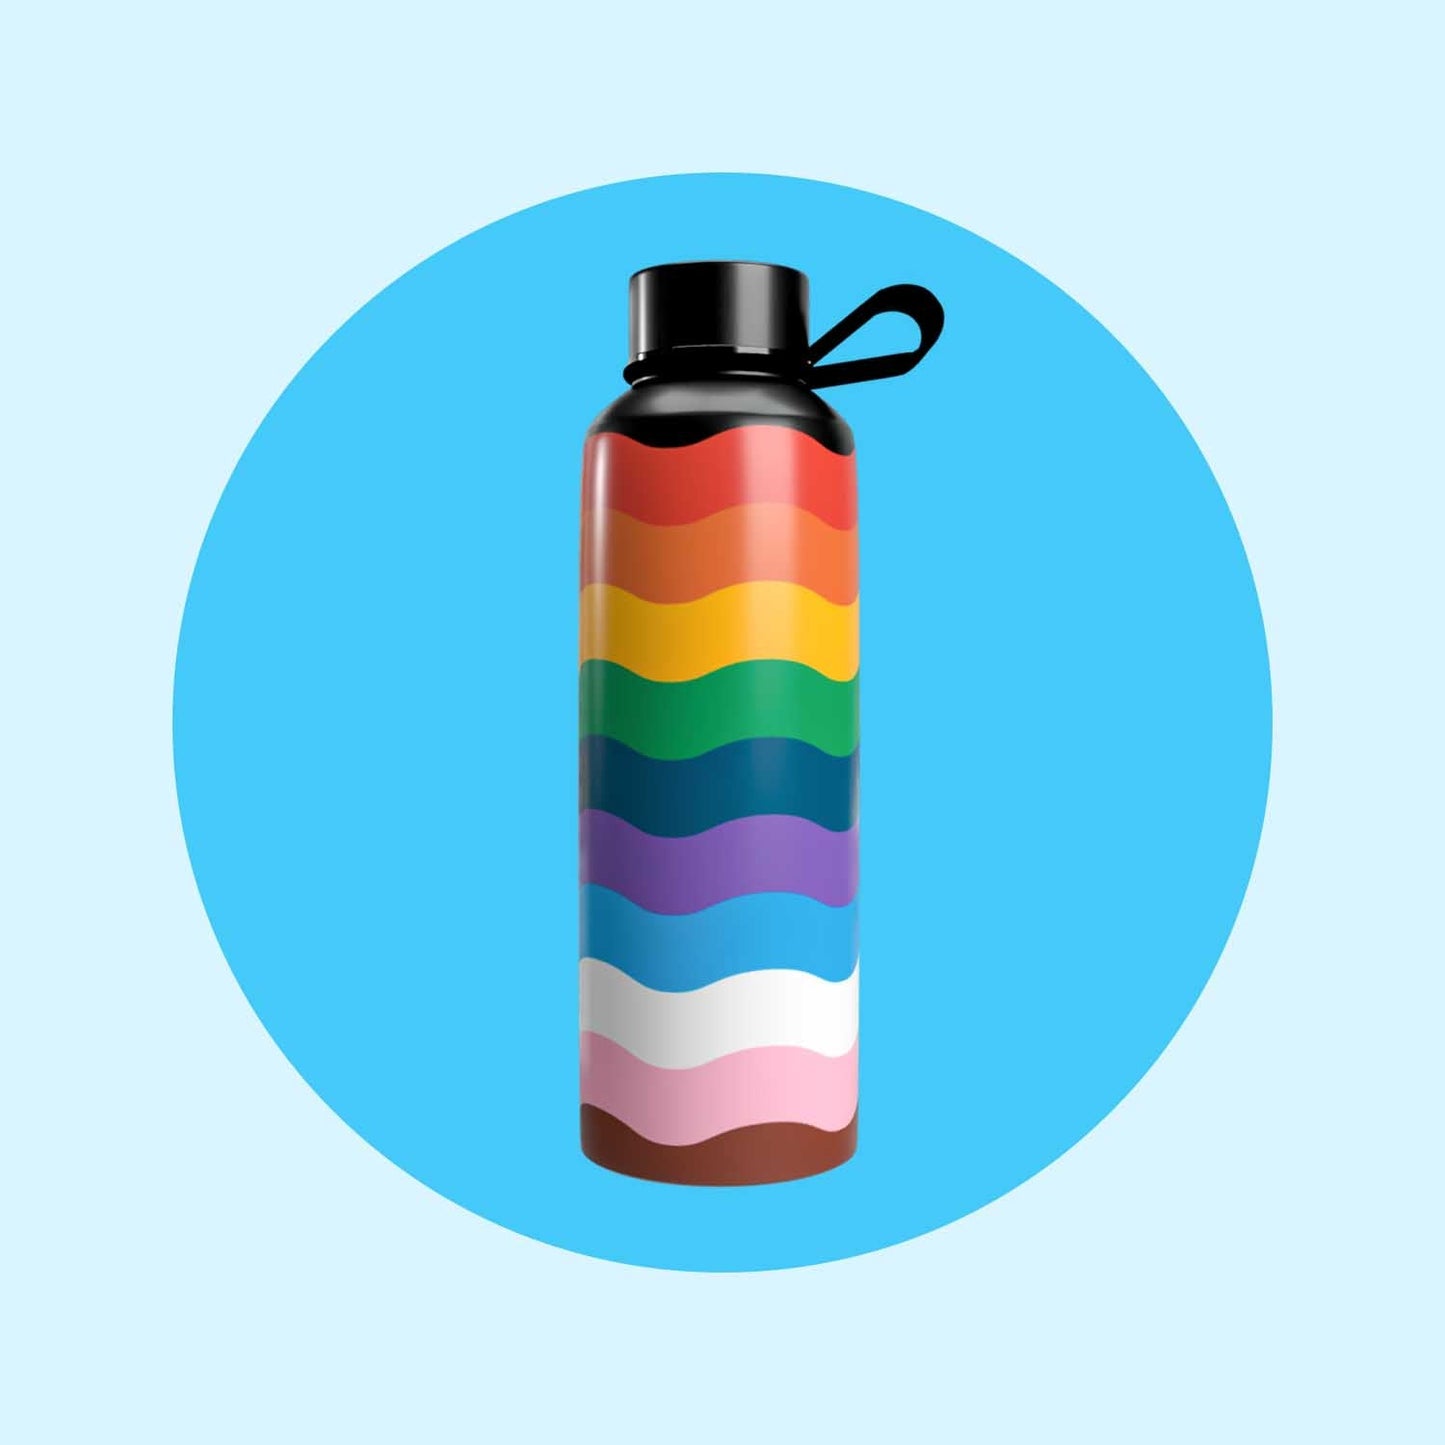 Pride Bottle - Pride Freebie - Fabulous Planning - P5 - TB - Pride